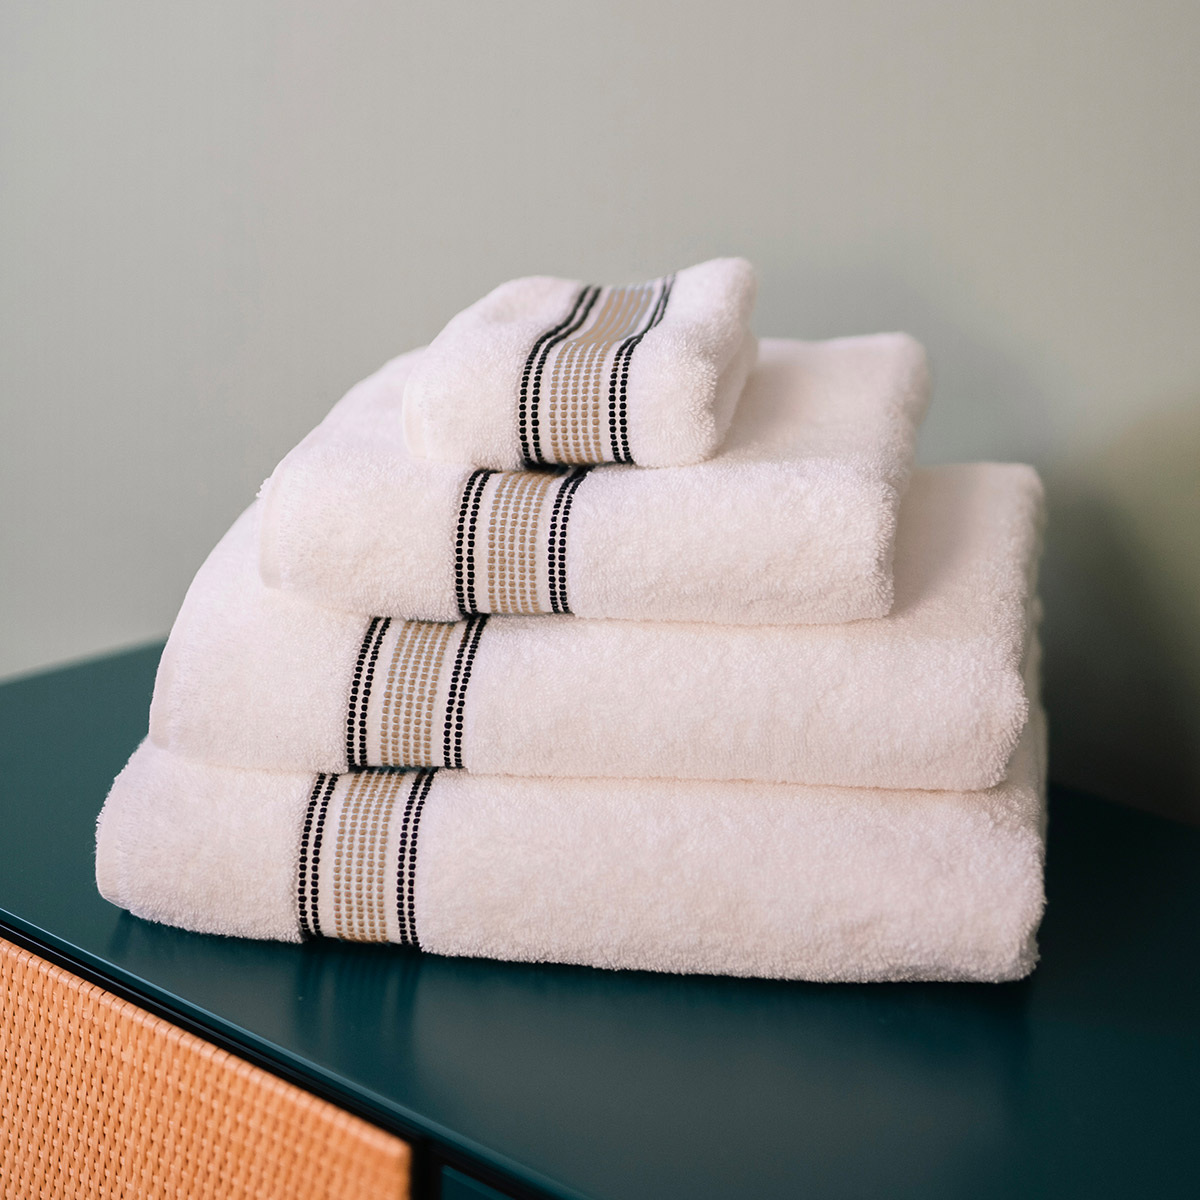 Towel Sicilia, Linen - L70 x W140 cm - Organic cotton - image 3